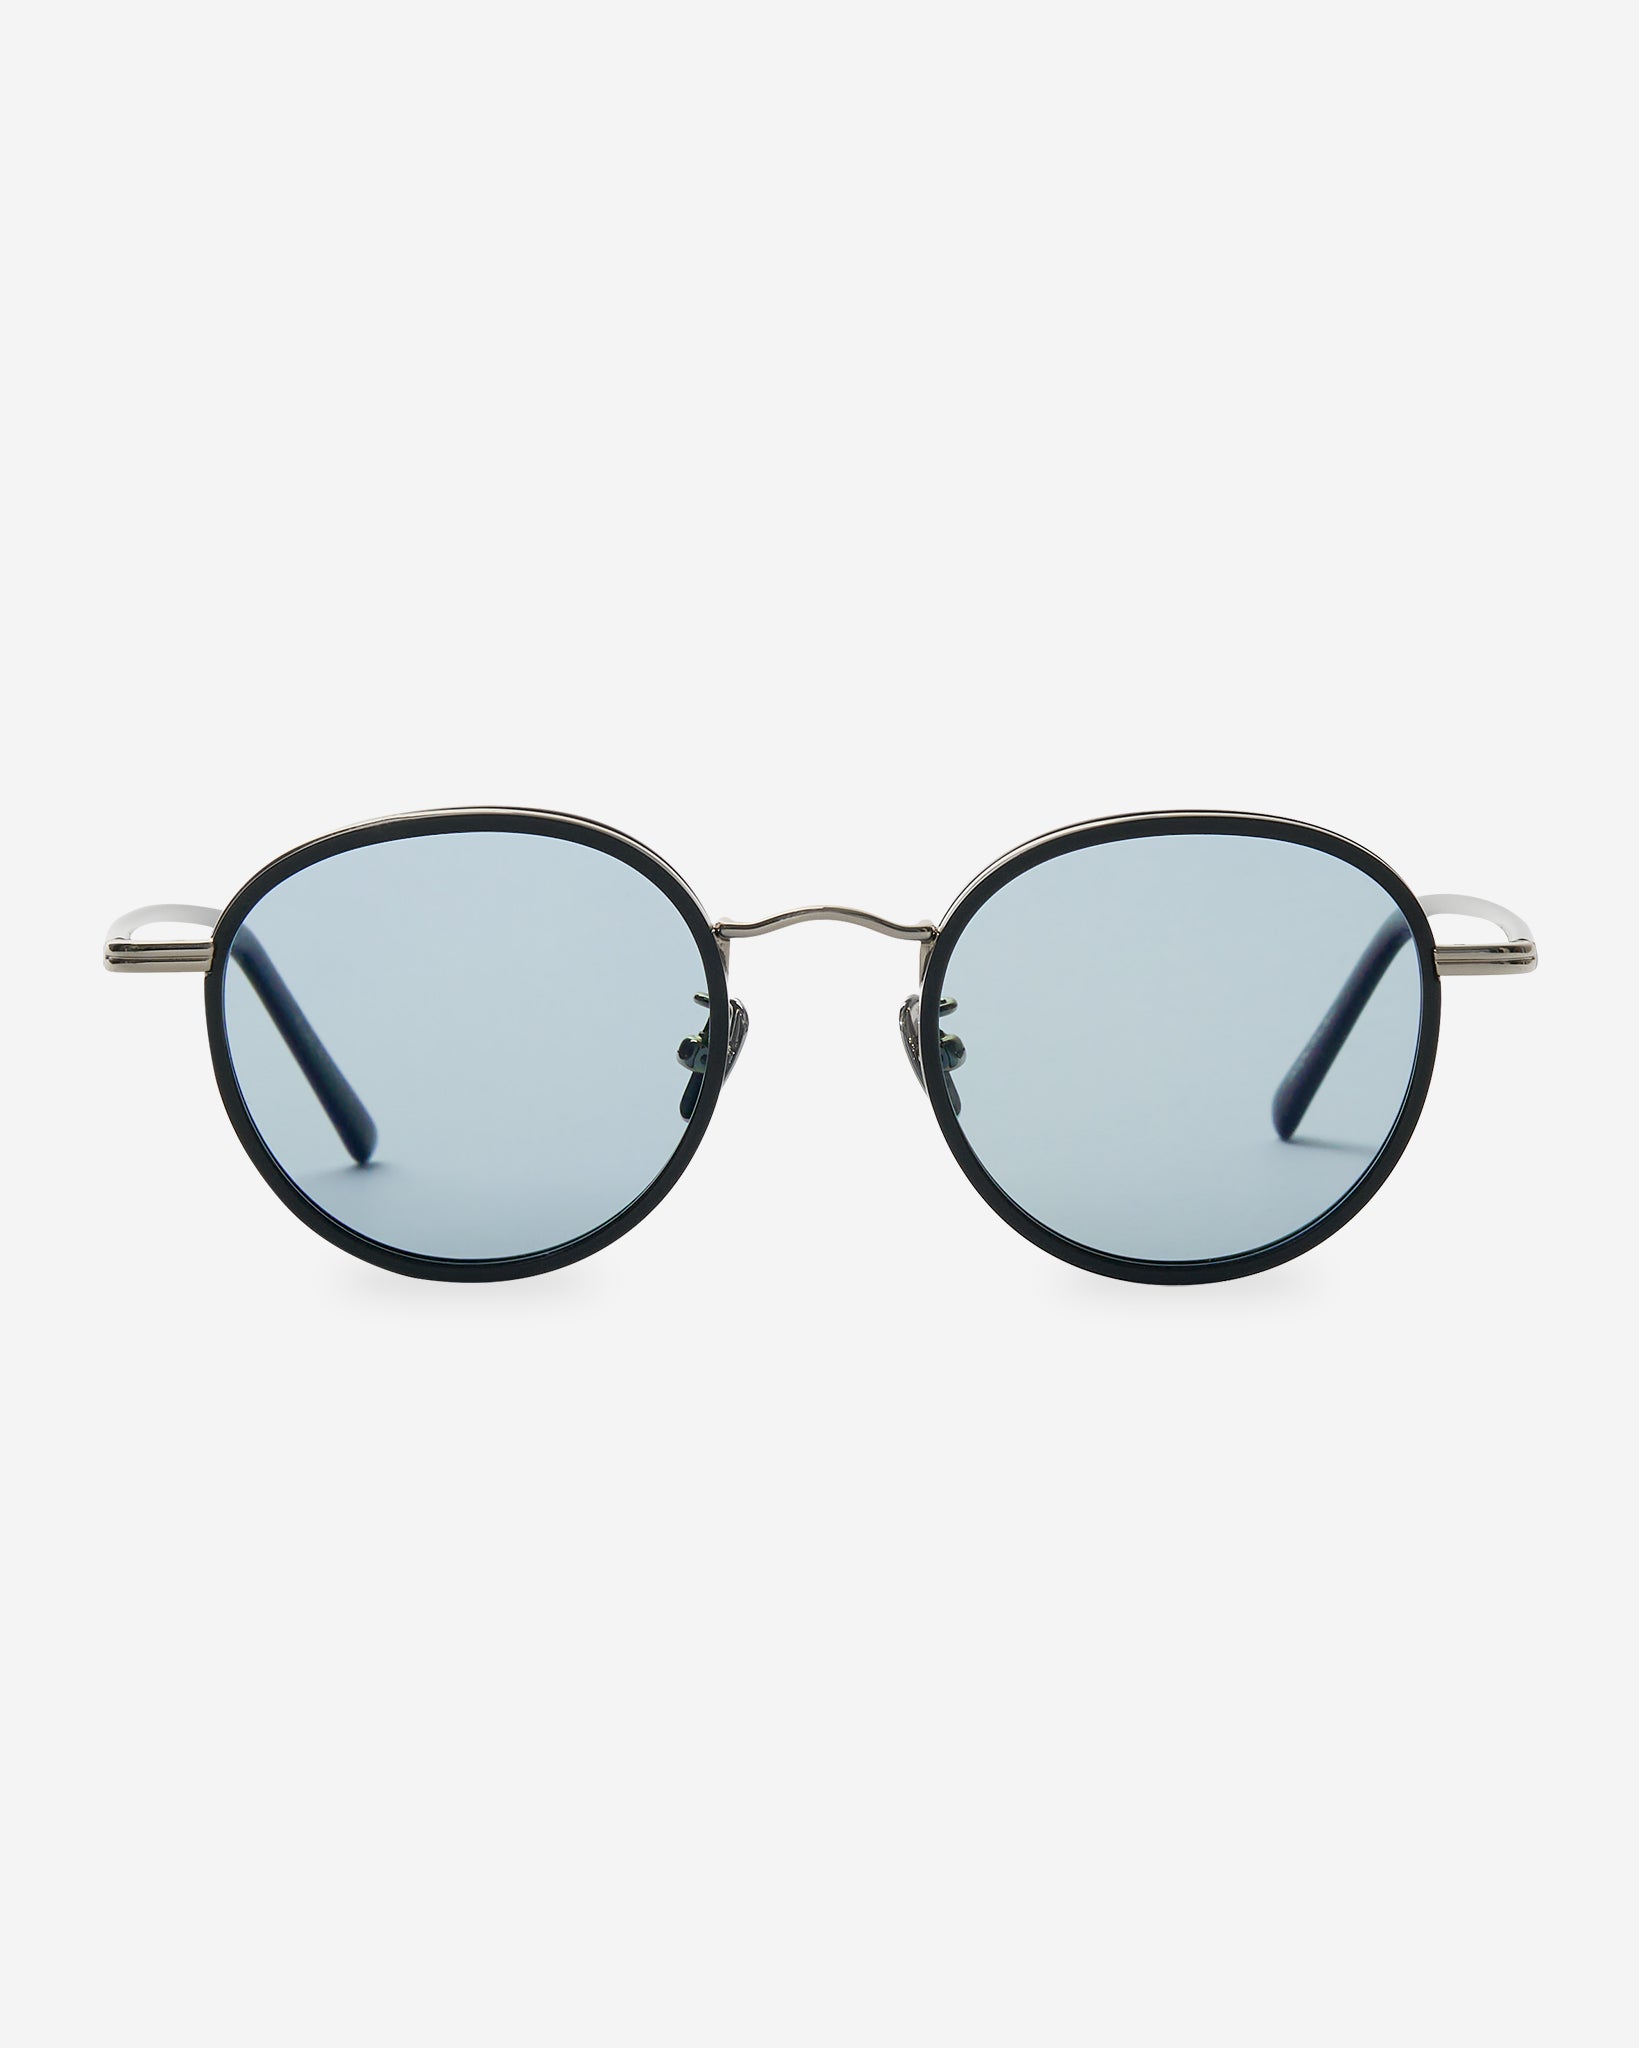 Plea Sunglasses - Black/Silver